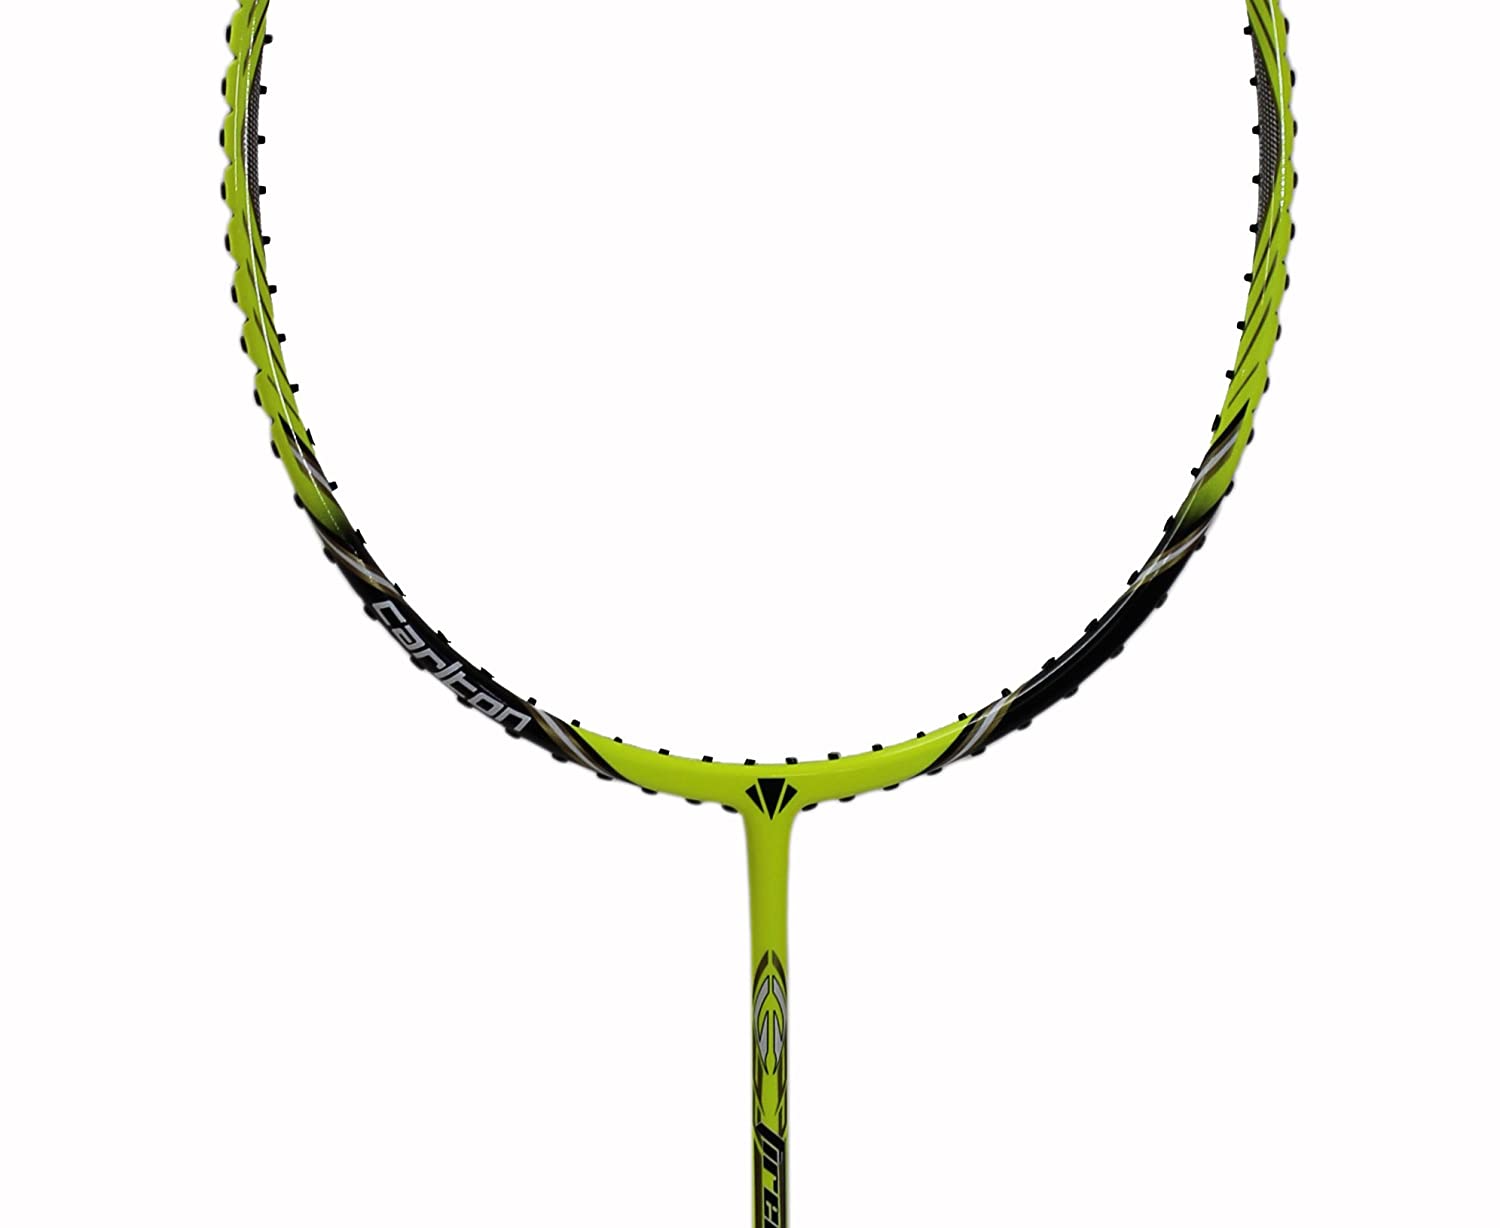 Carlton FireBlade 100 Ti Mesh Strung Badminton Racket